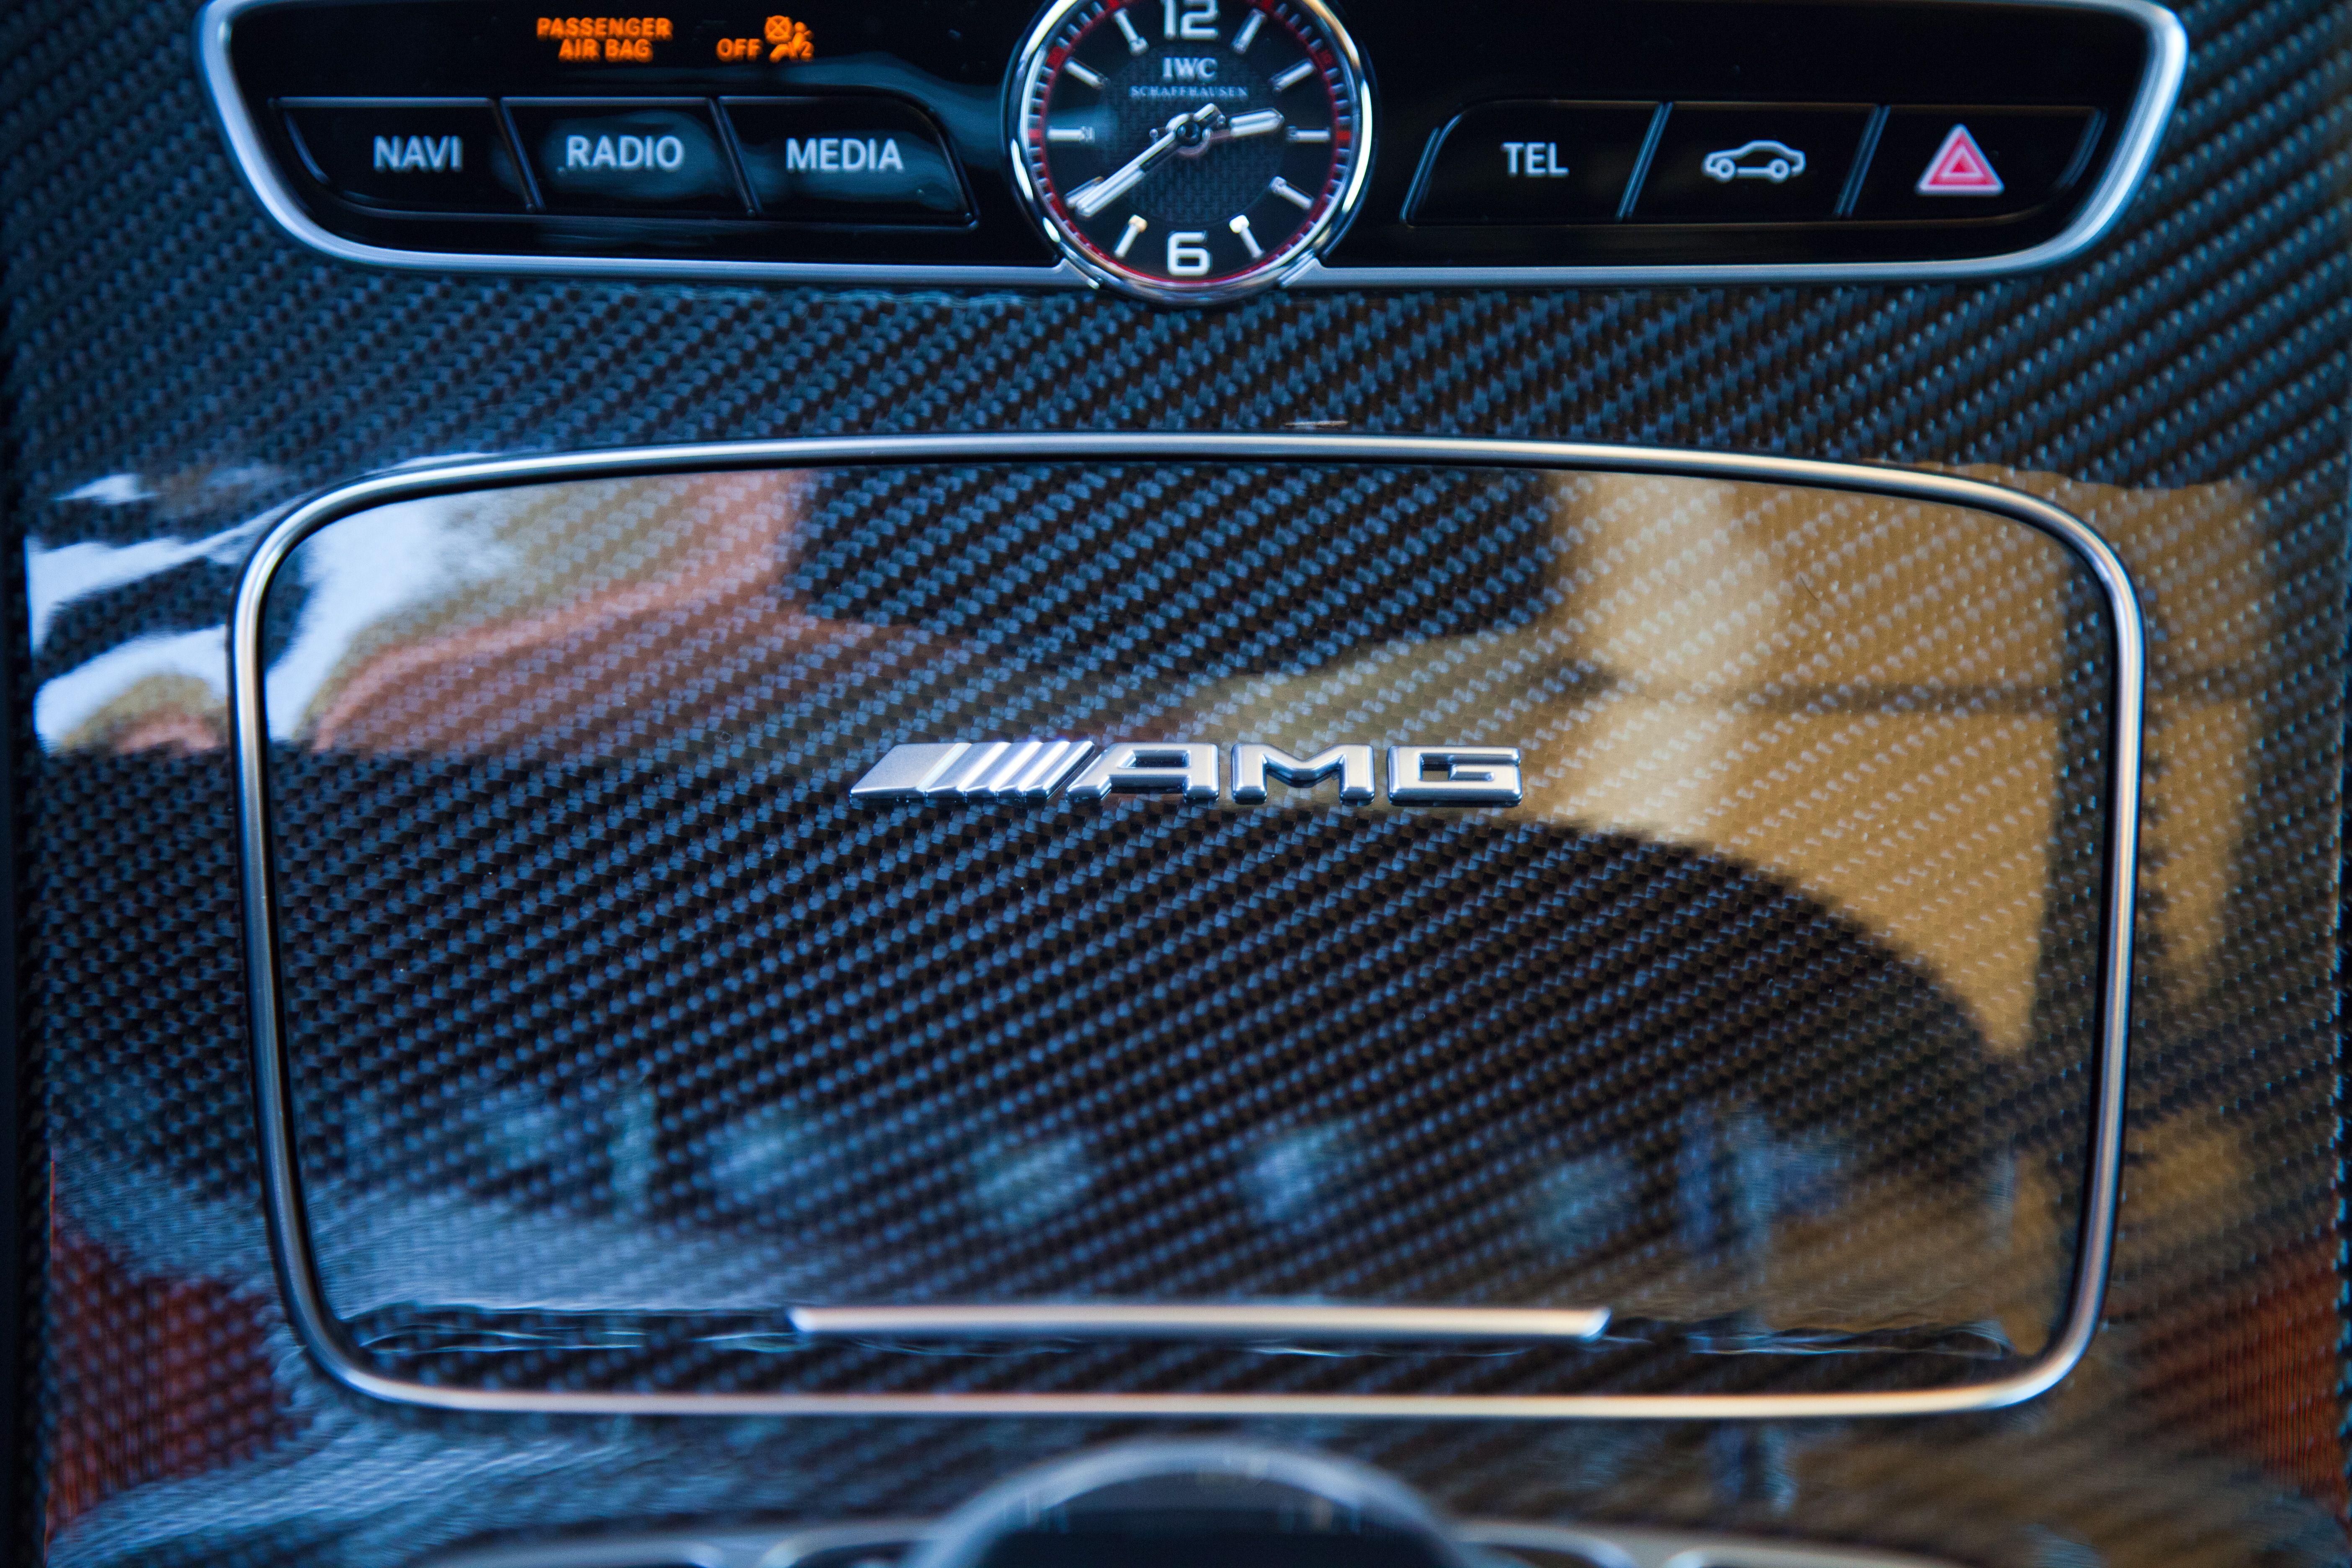 2019 Mercedes-Benz AMG E63 S - Driven